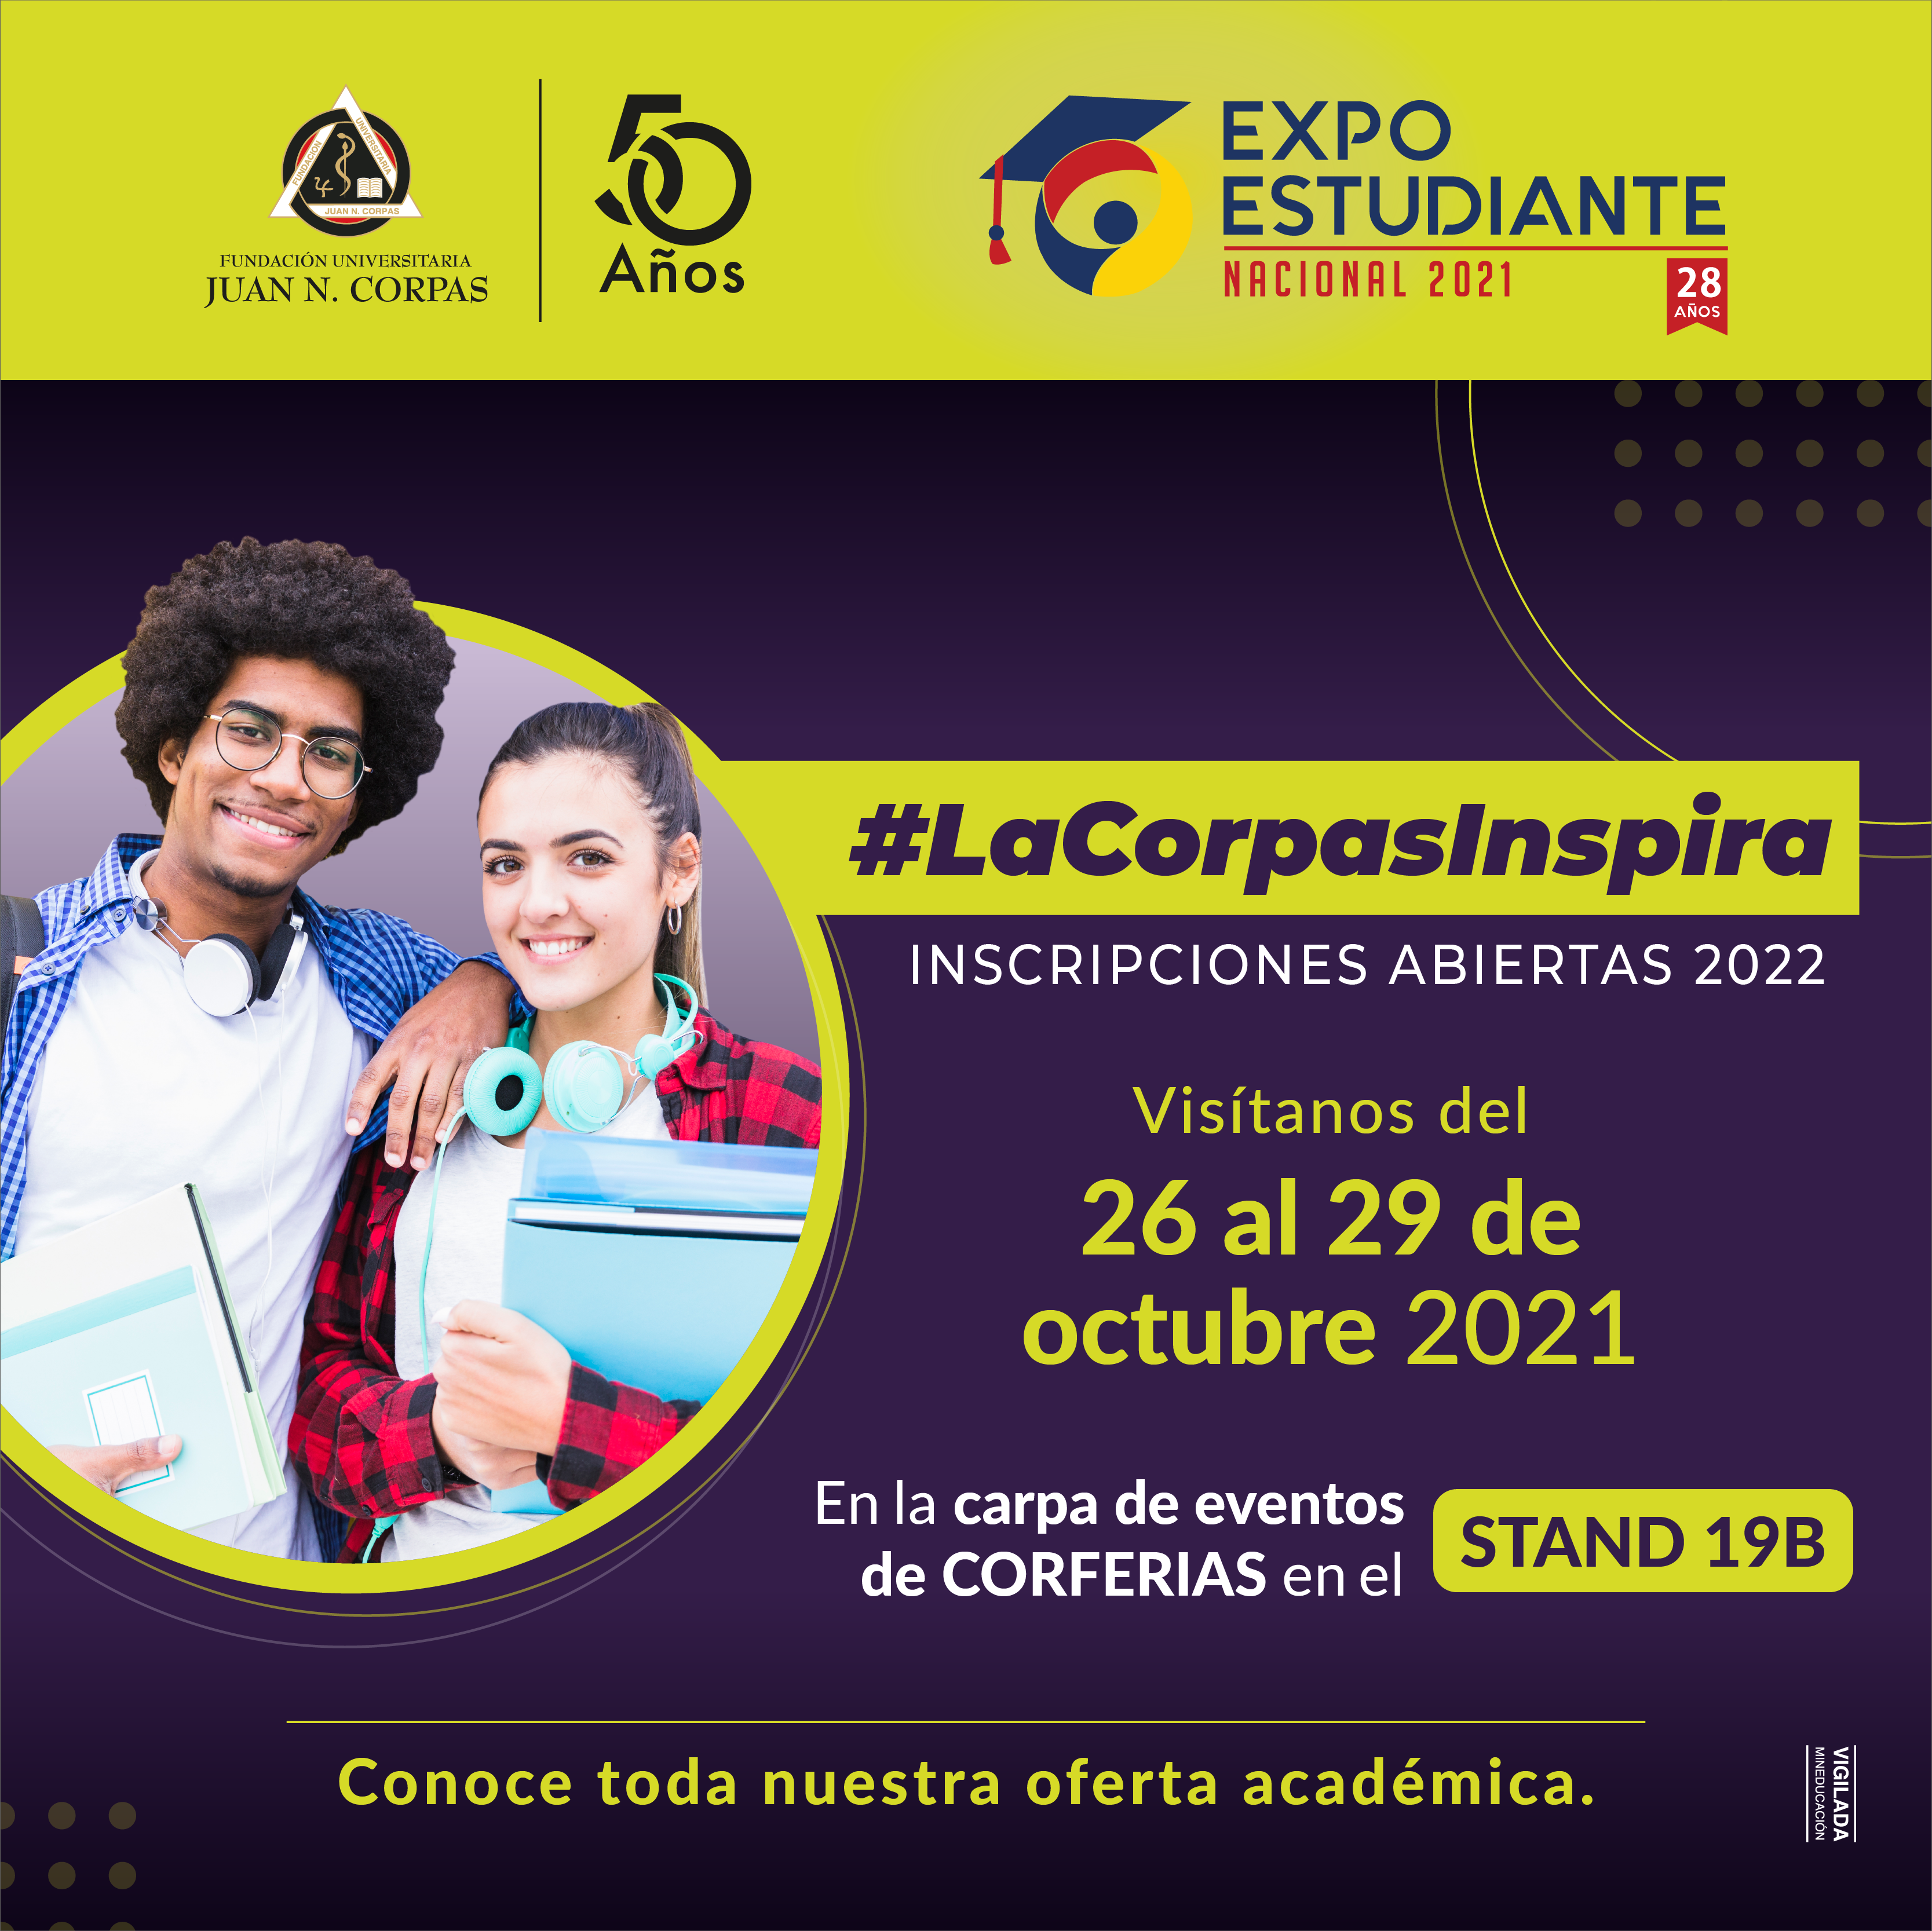 Expo Estudiantes Nacional 2021